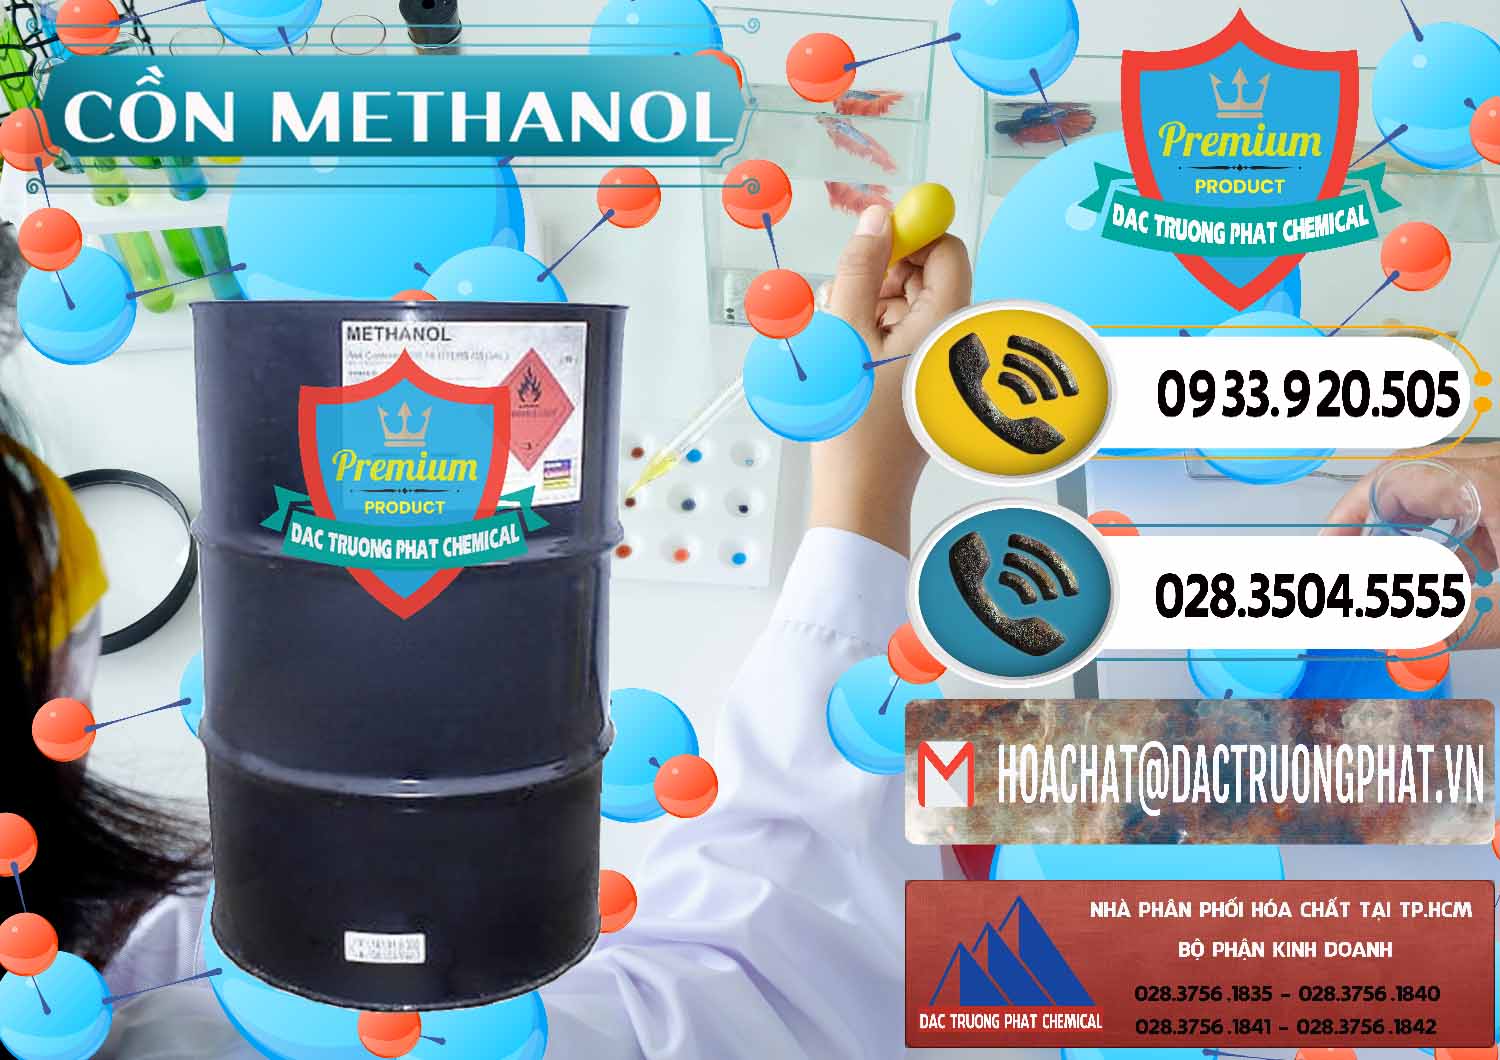 Nơi nhập khẩu _ bán Cồn Methanol - Methyl Alcohol Mã Lai Malaysia - 0331 - Nơi cung ứng _ phân phối hóa chất tại TP.HCM - hoachatdetnhuom.vn